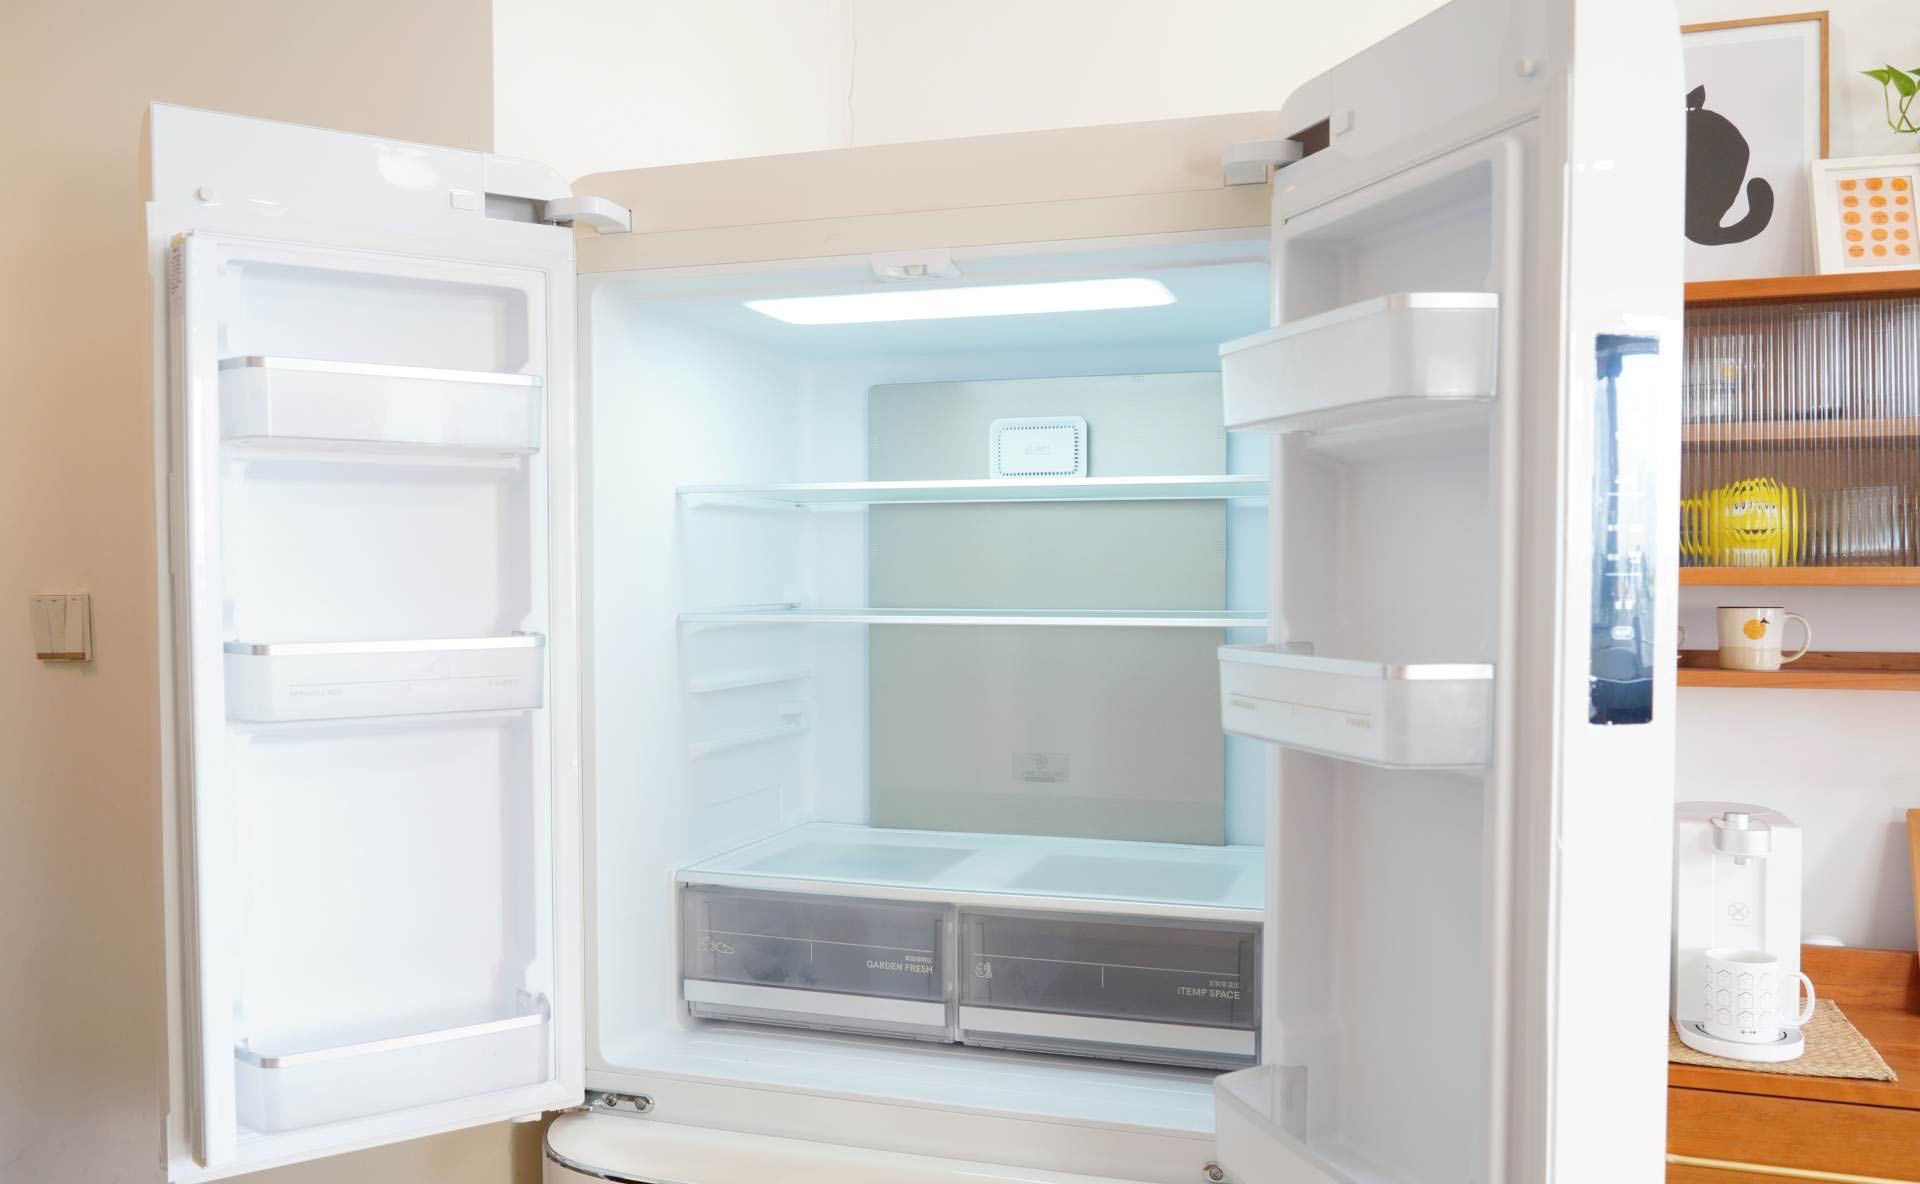 Review nhanh mẫu tủ lạnh gia đình phong cách retro đẹp ngang ngửa Smeg mà giá thì chưa đến một nửa - Ảnh 5.